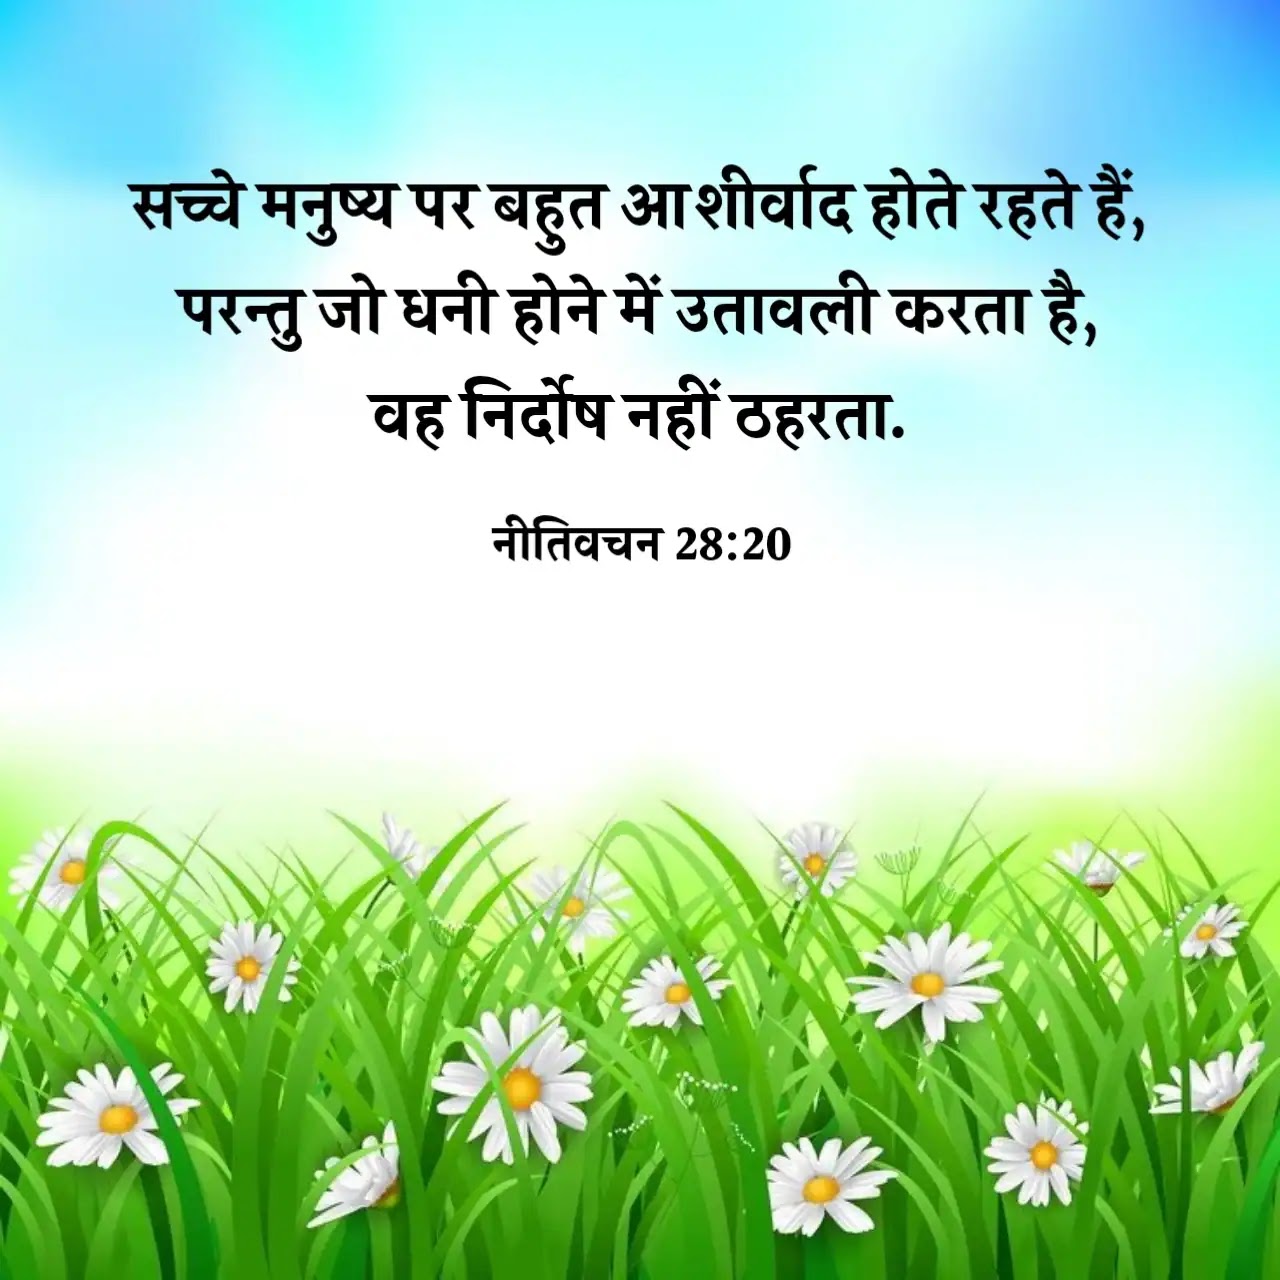 Hindi Bible Vachan Image